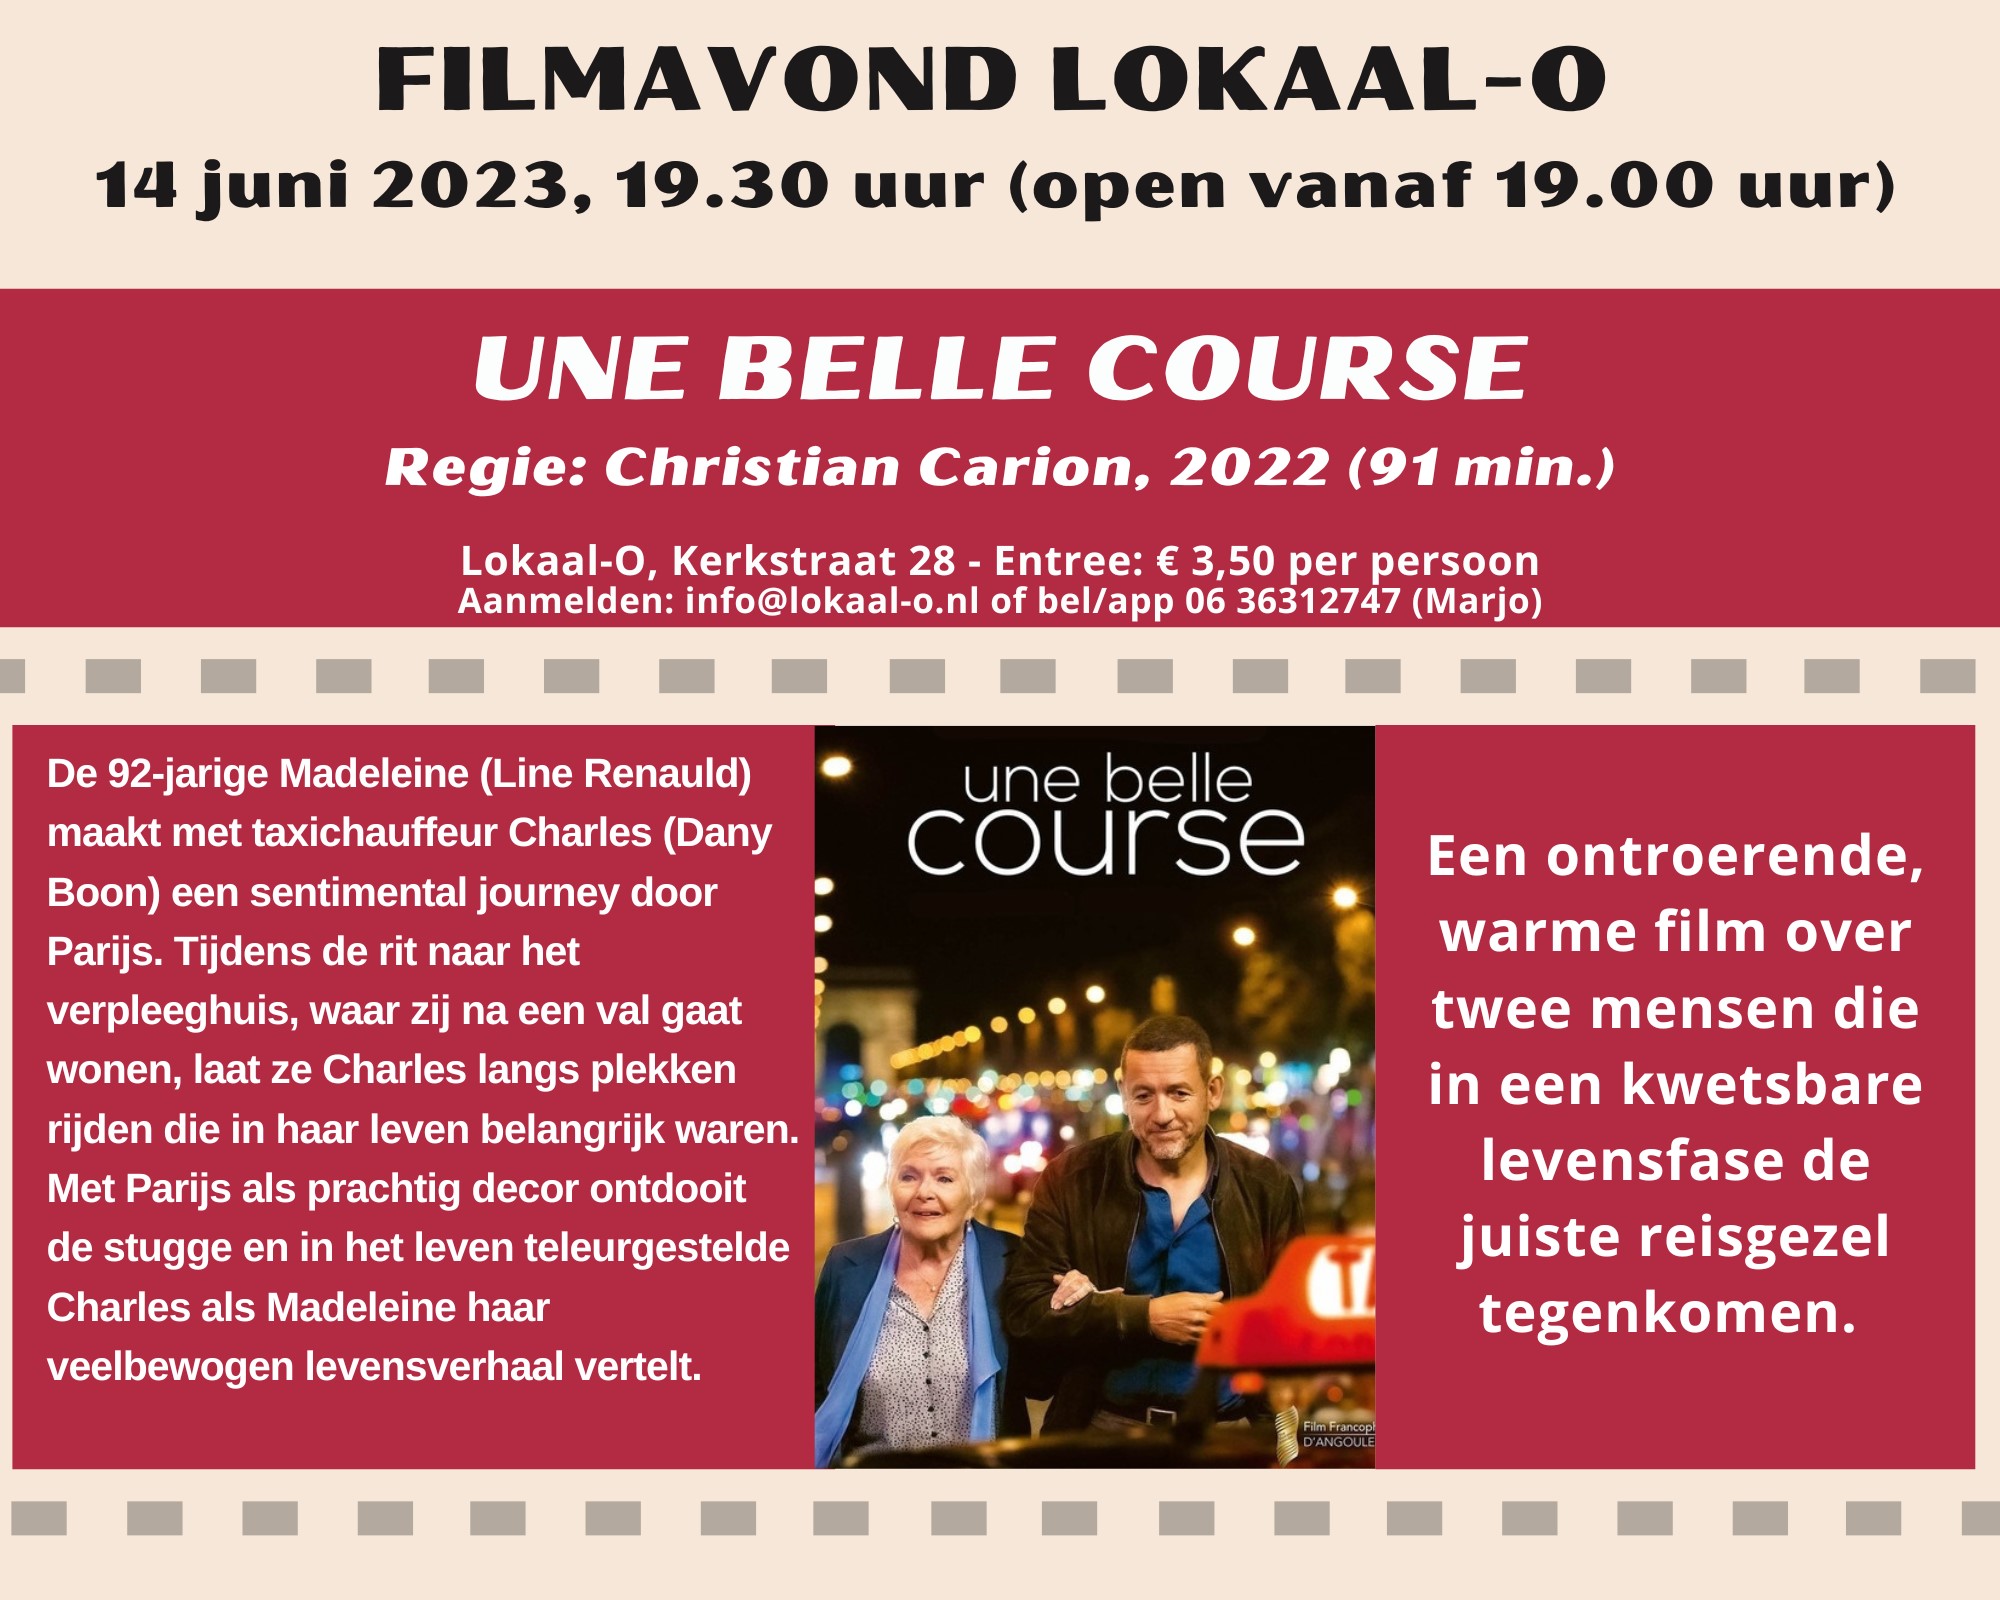 Je bekijkt nu Fimavond in Lokaal-O op 14 juni: “Une belle course”